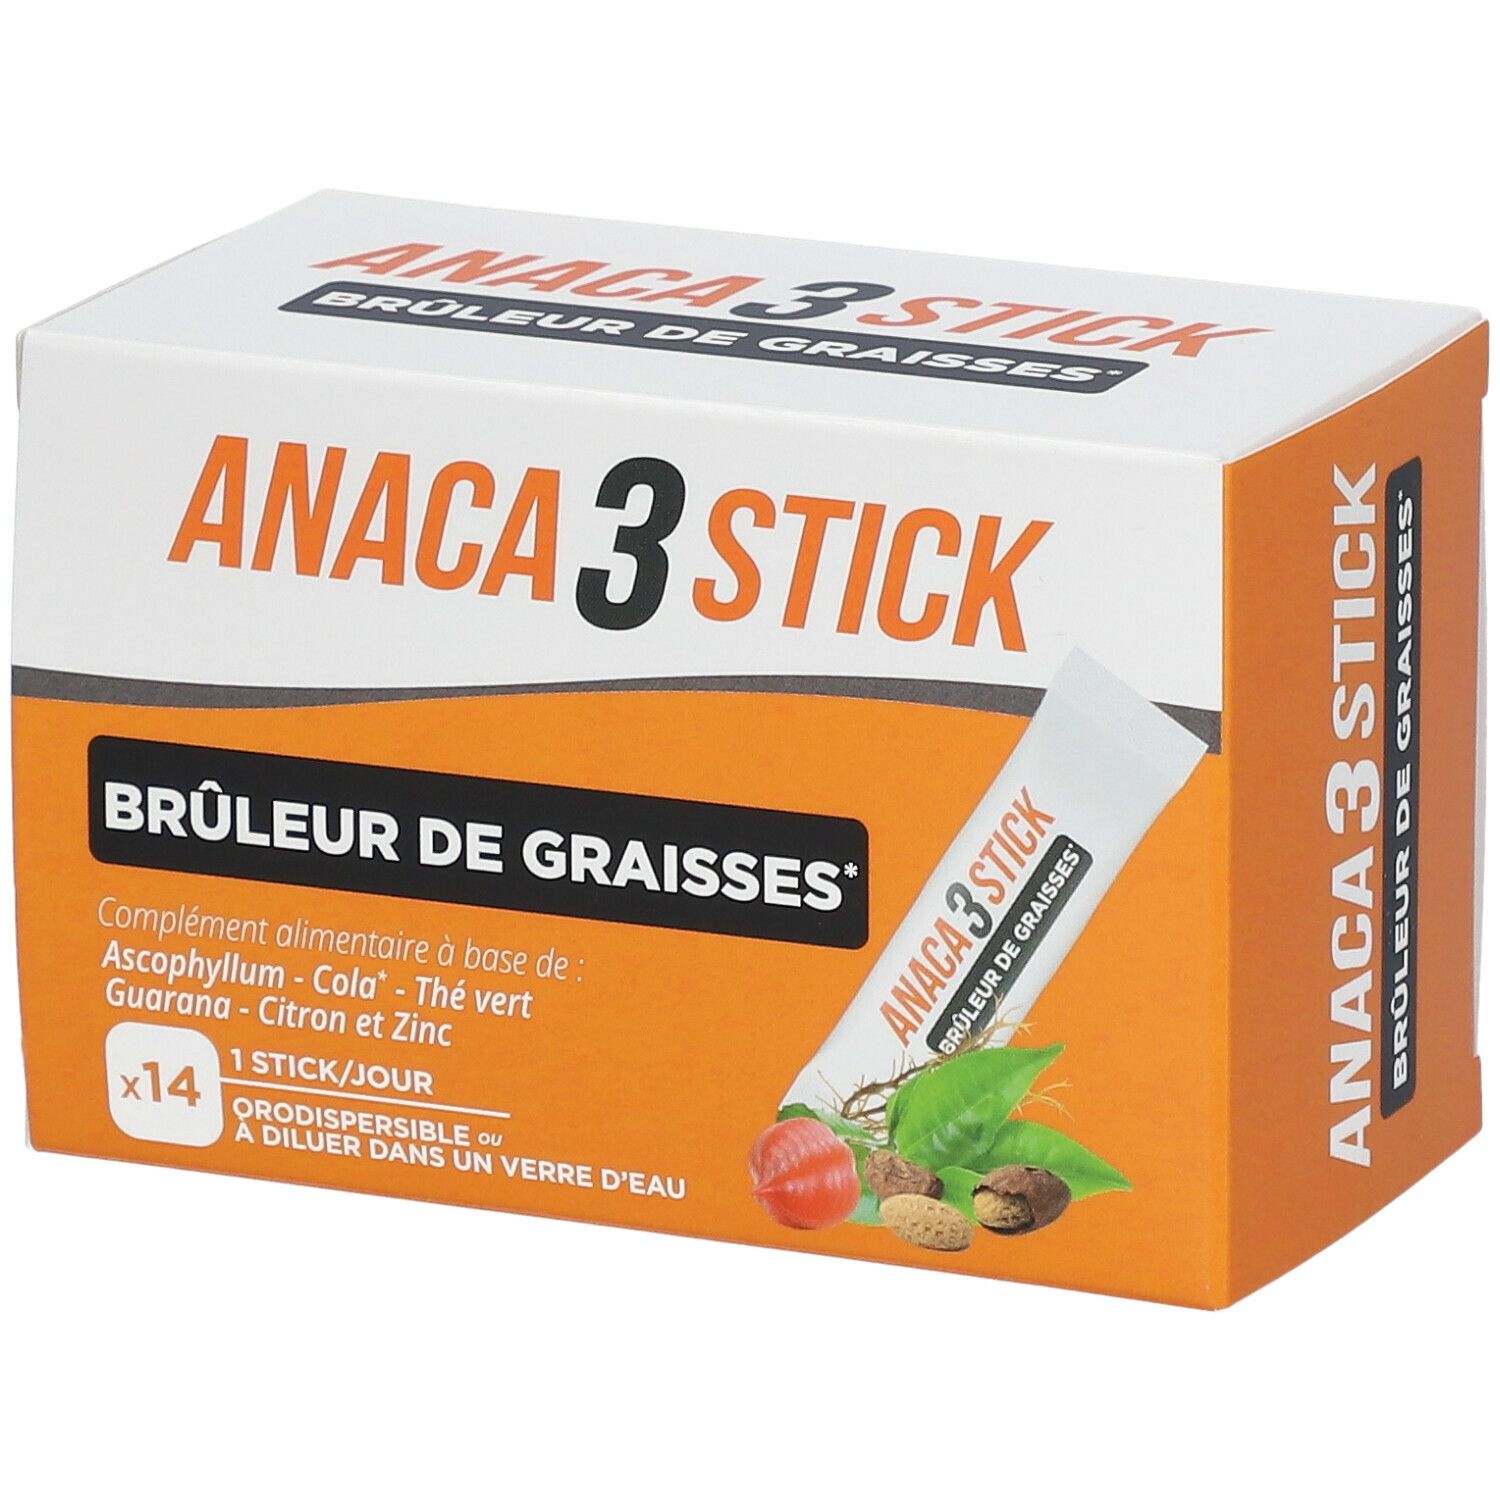 Anaca3 Stick Brûleur de graisses